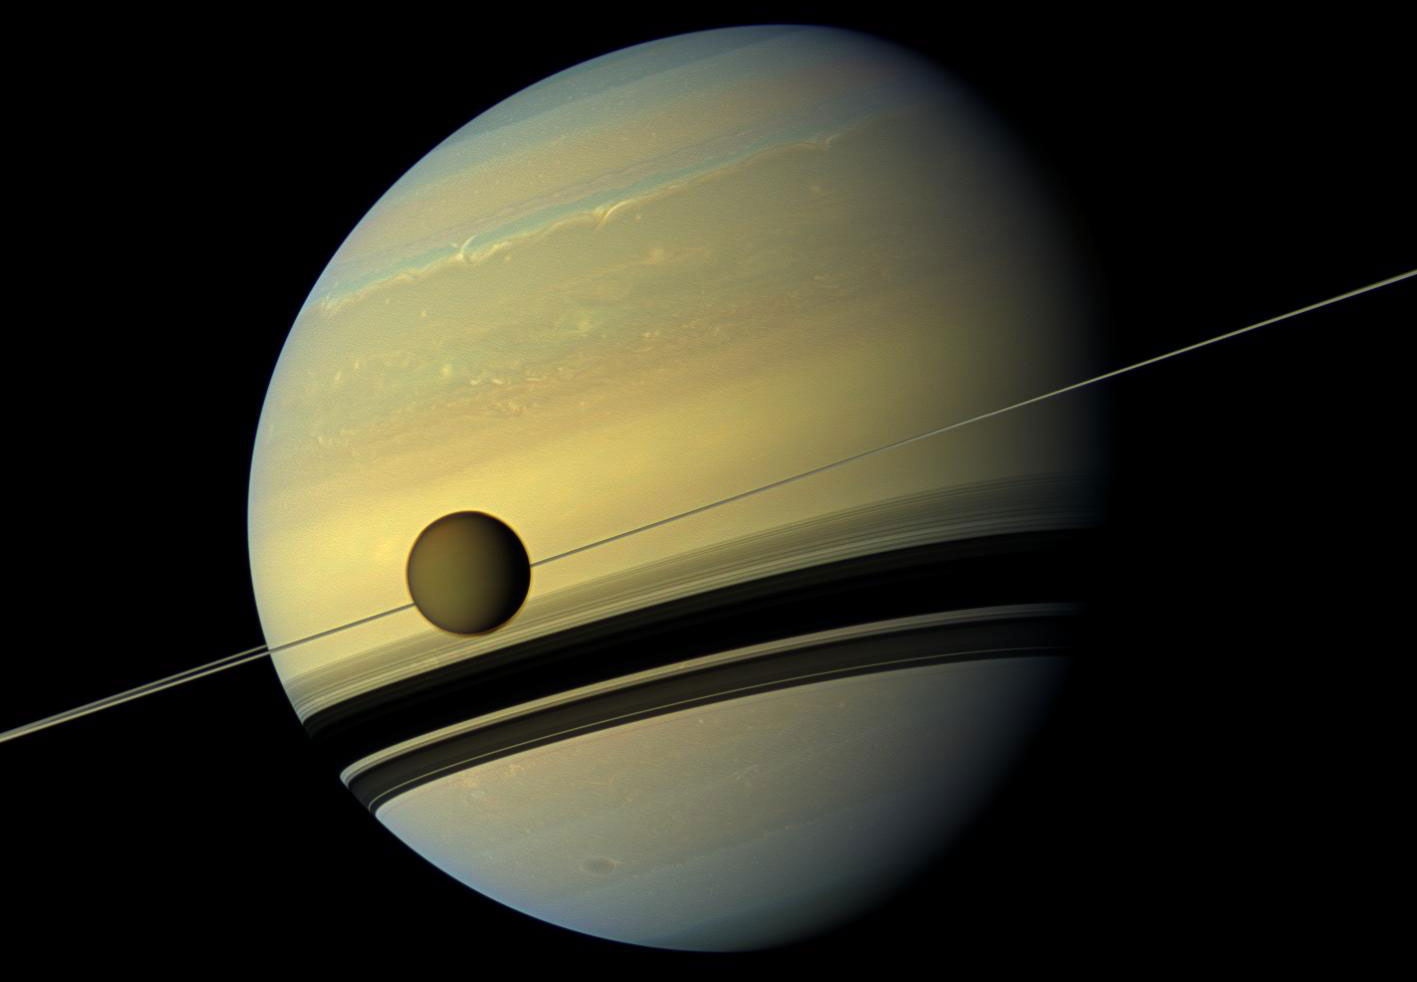 Titan is seen here as it orbits Saturn